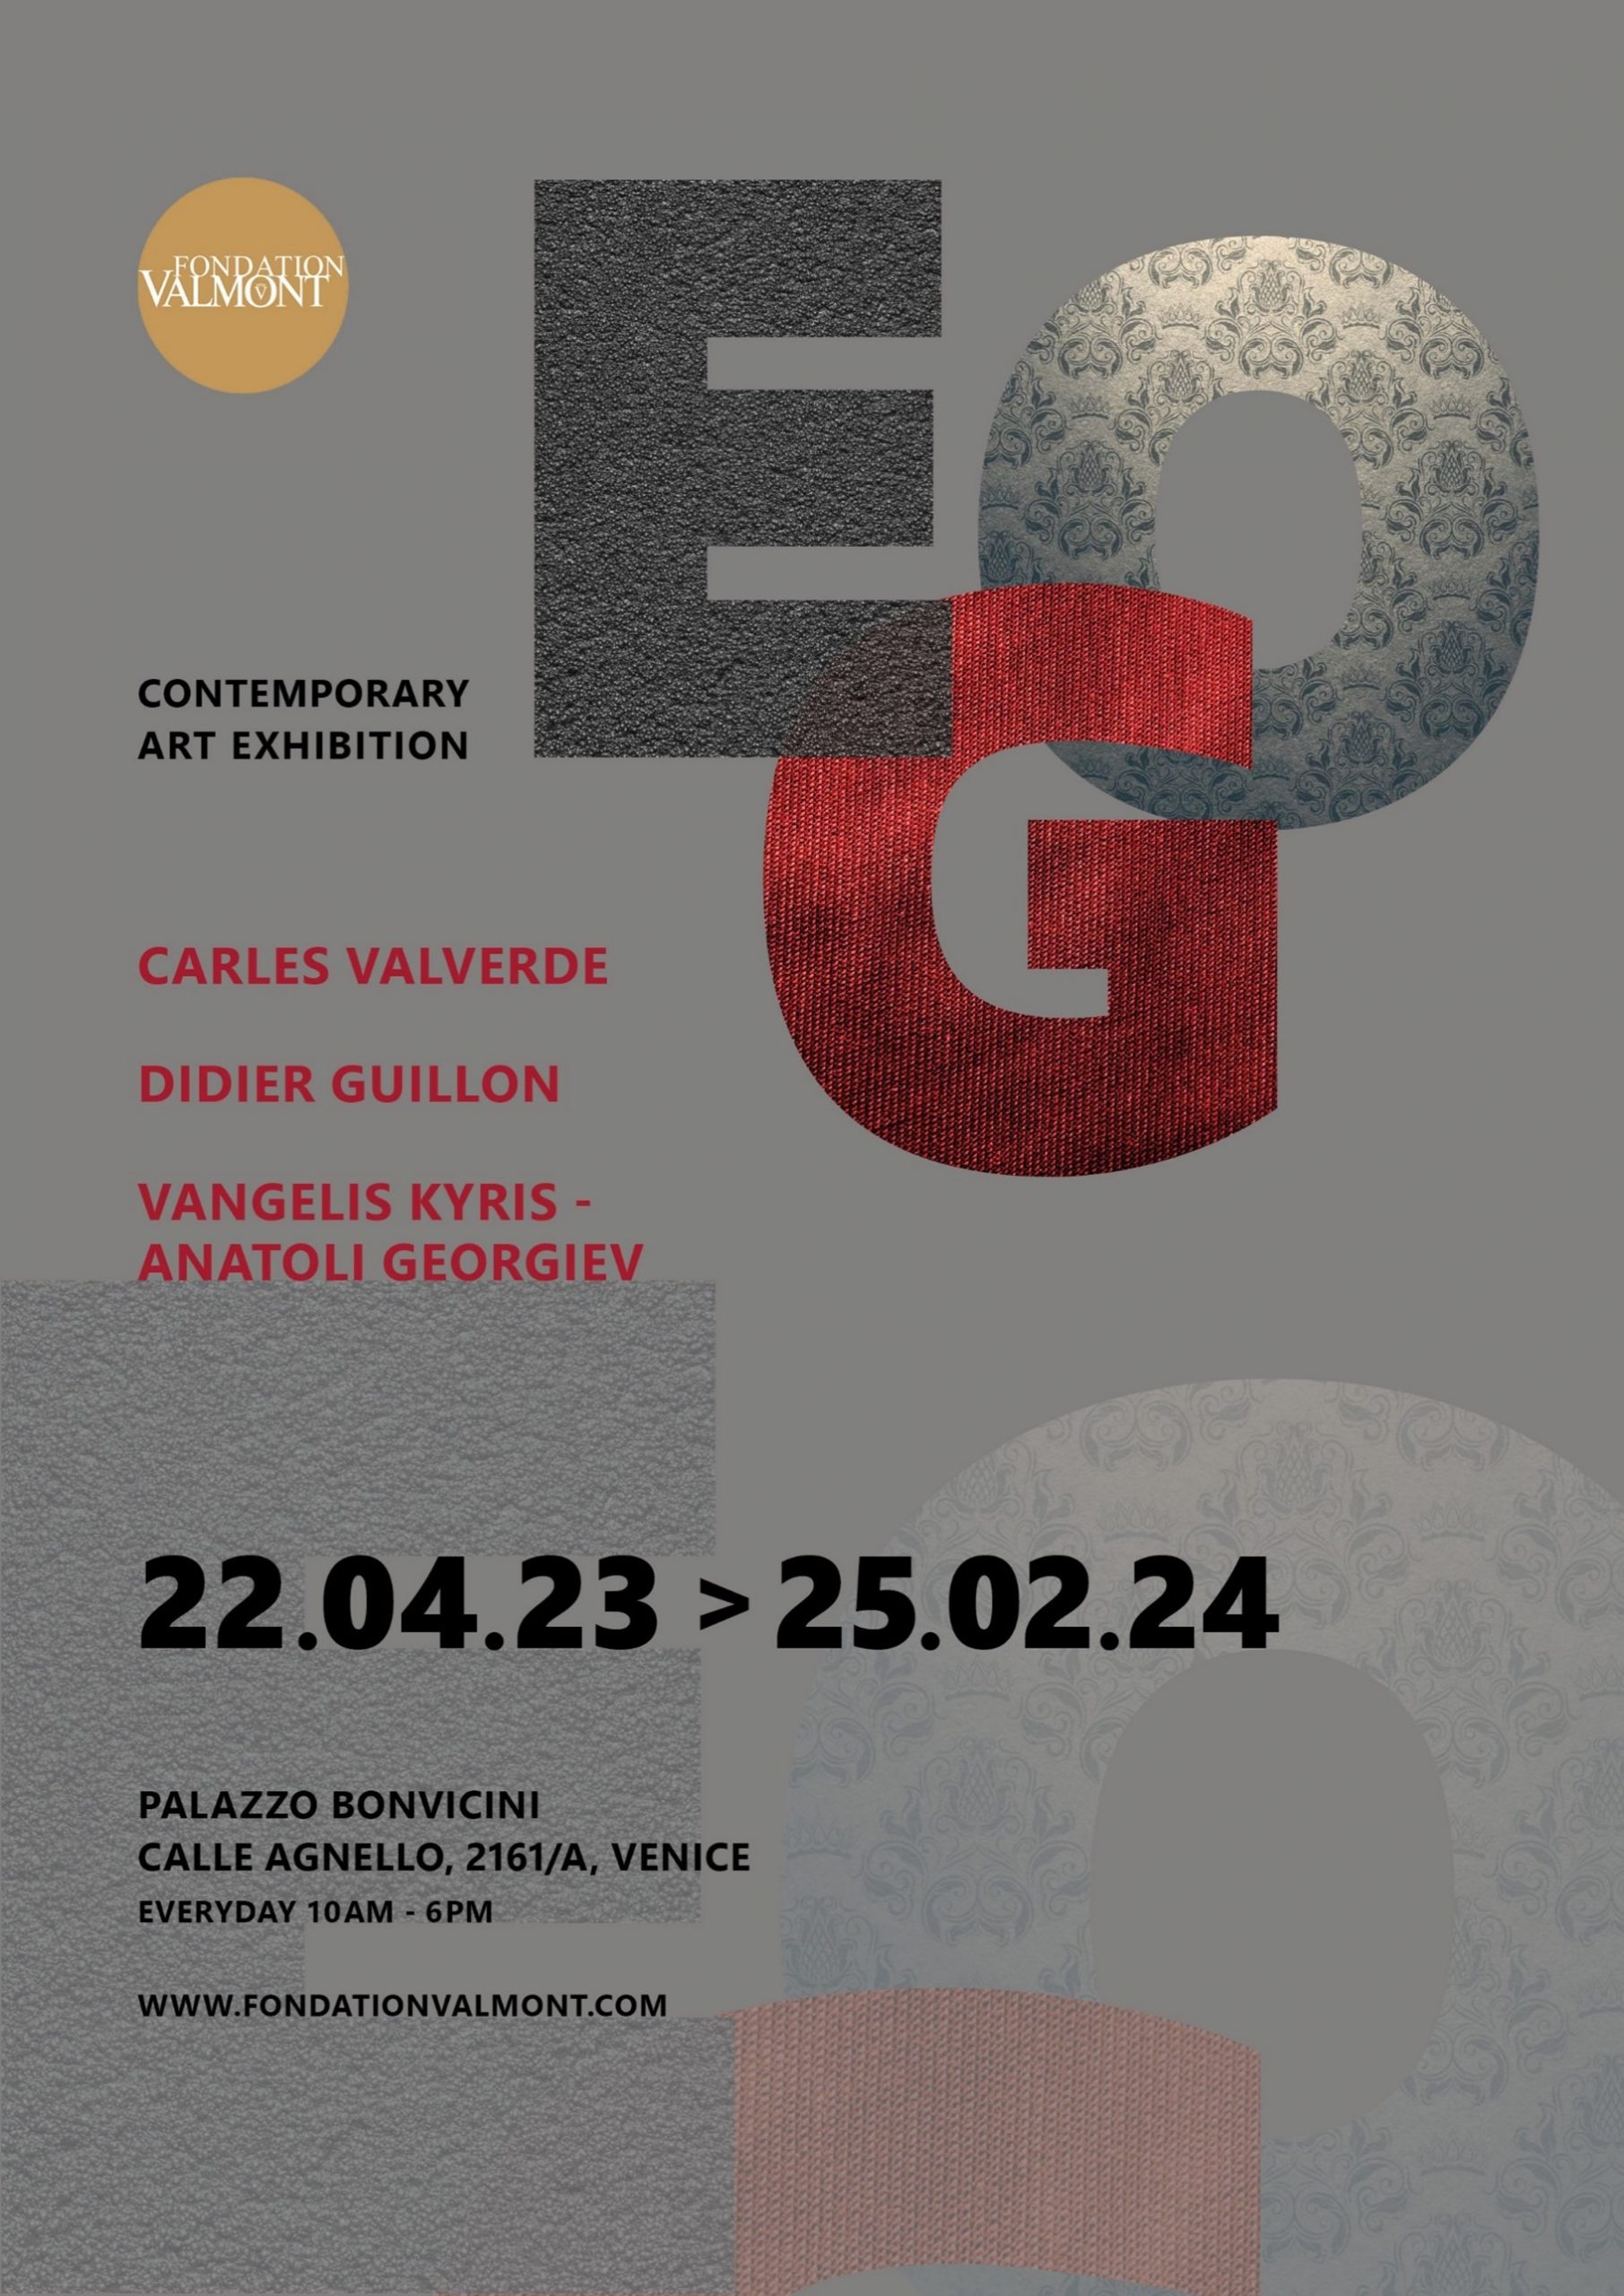 Tα έργα των Βαγγέλη Κύρη και Anatoli Georgiev ταξιδεύουν στην έκθεση σύγχρονης τέχνης «EGO» στη Βενετία μαζί με τους Didier Guillon & Carles Valverde